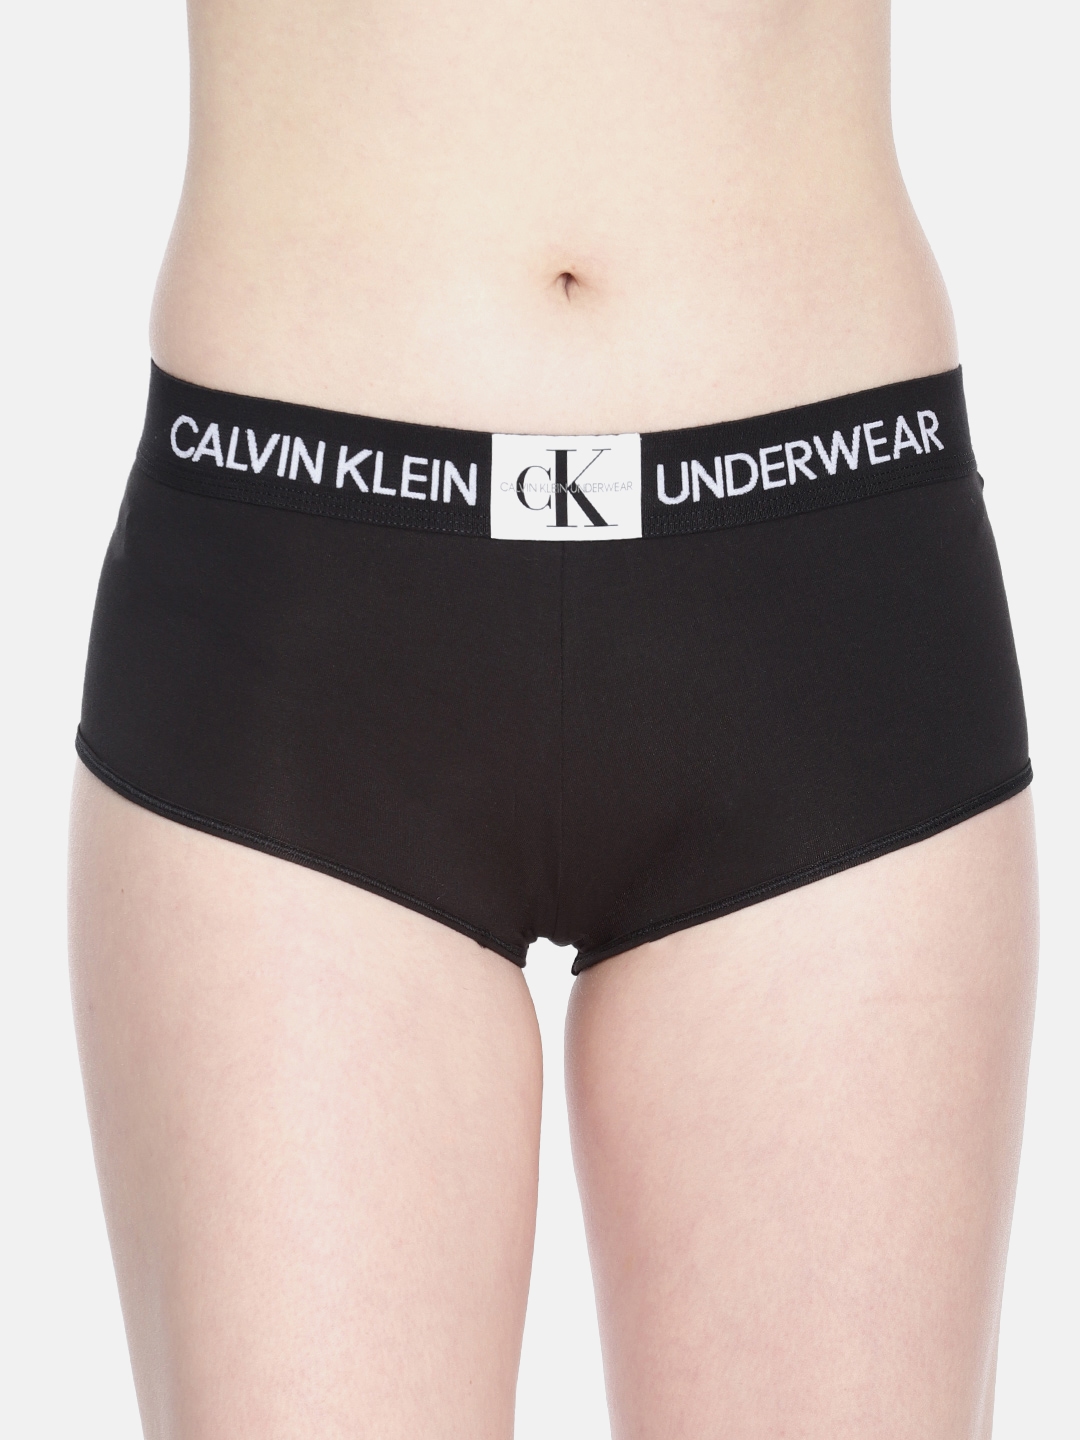 Buy Calvin Klein Underwear Women Black Solid Boy Shorts QF4922001